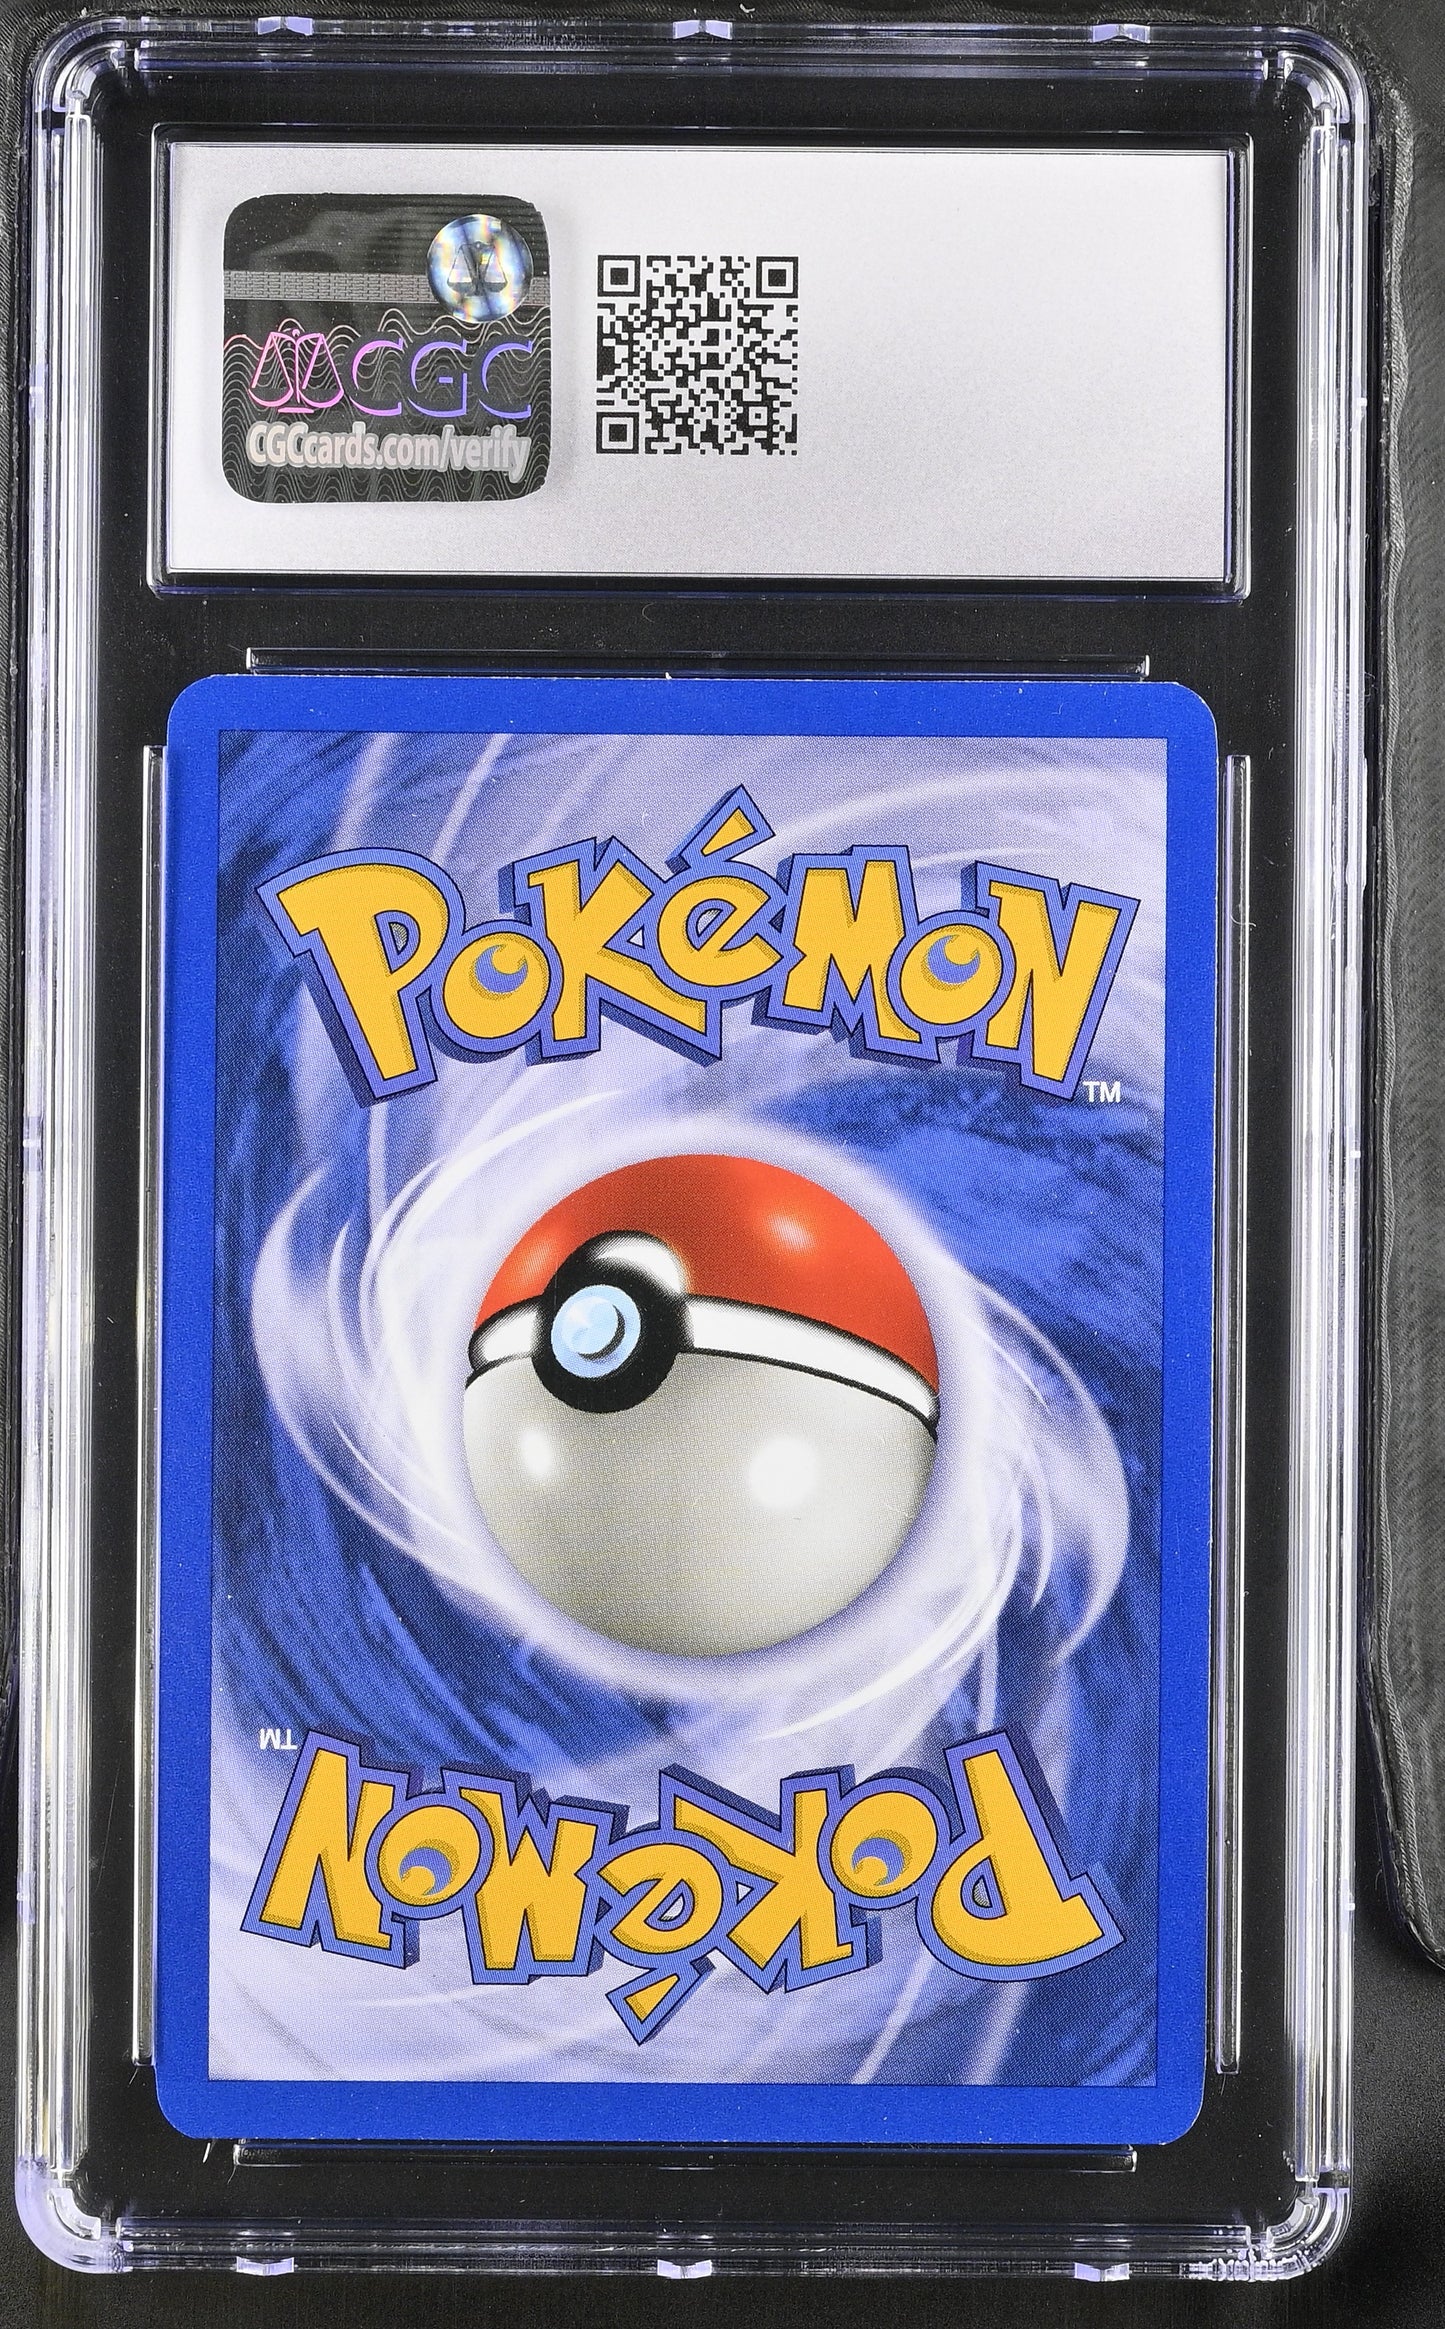 2000 Pokémon TCG Charizard #4/130 English CGC 8.5